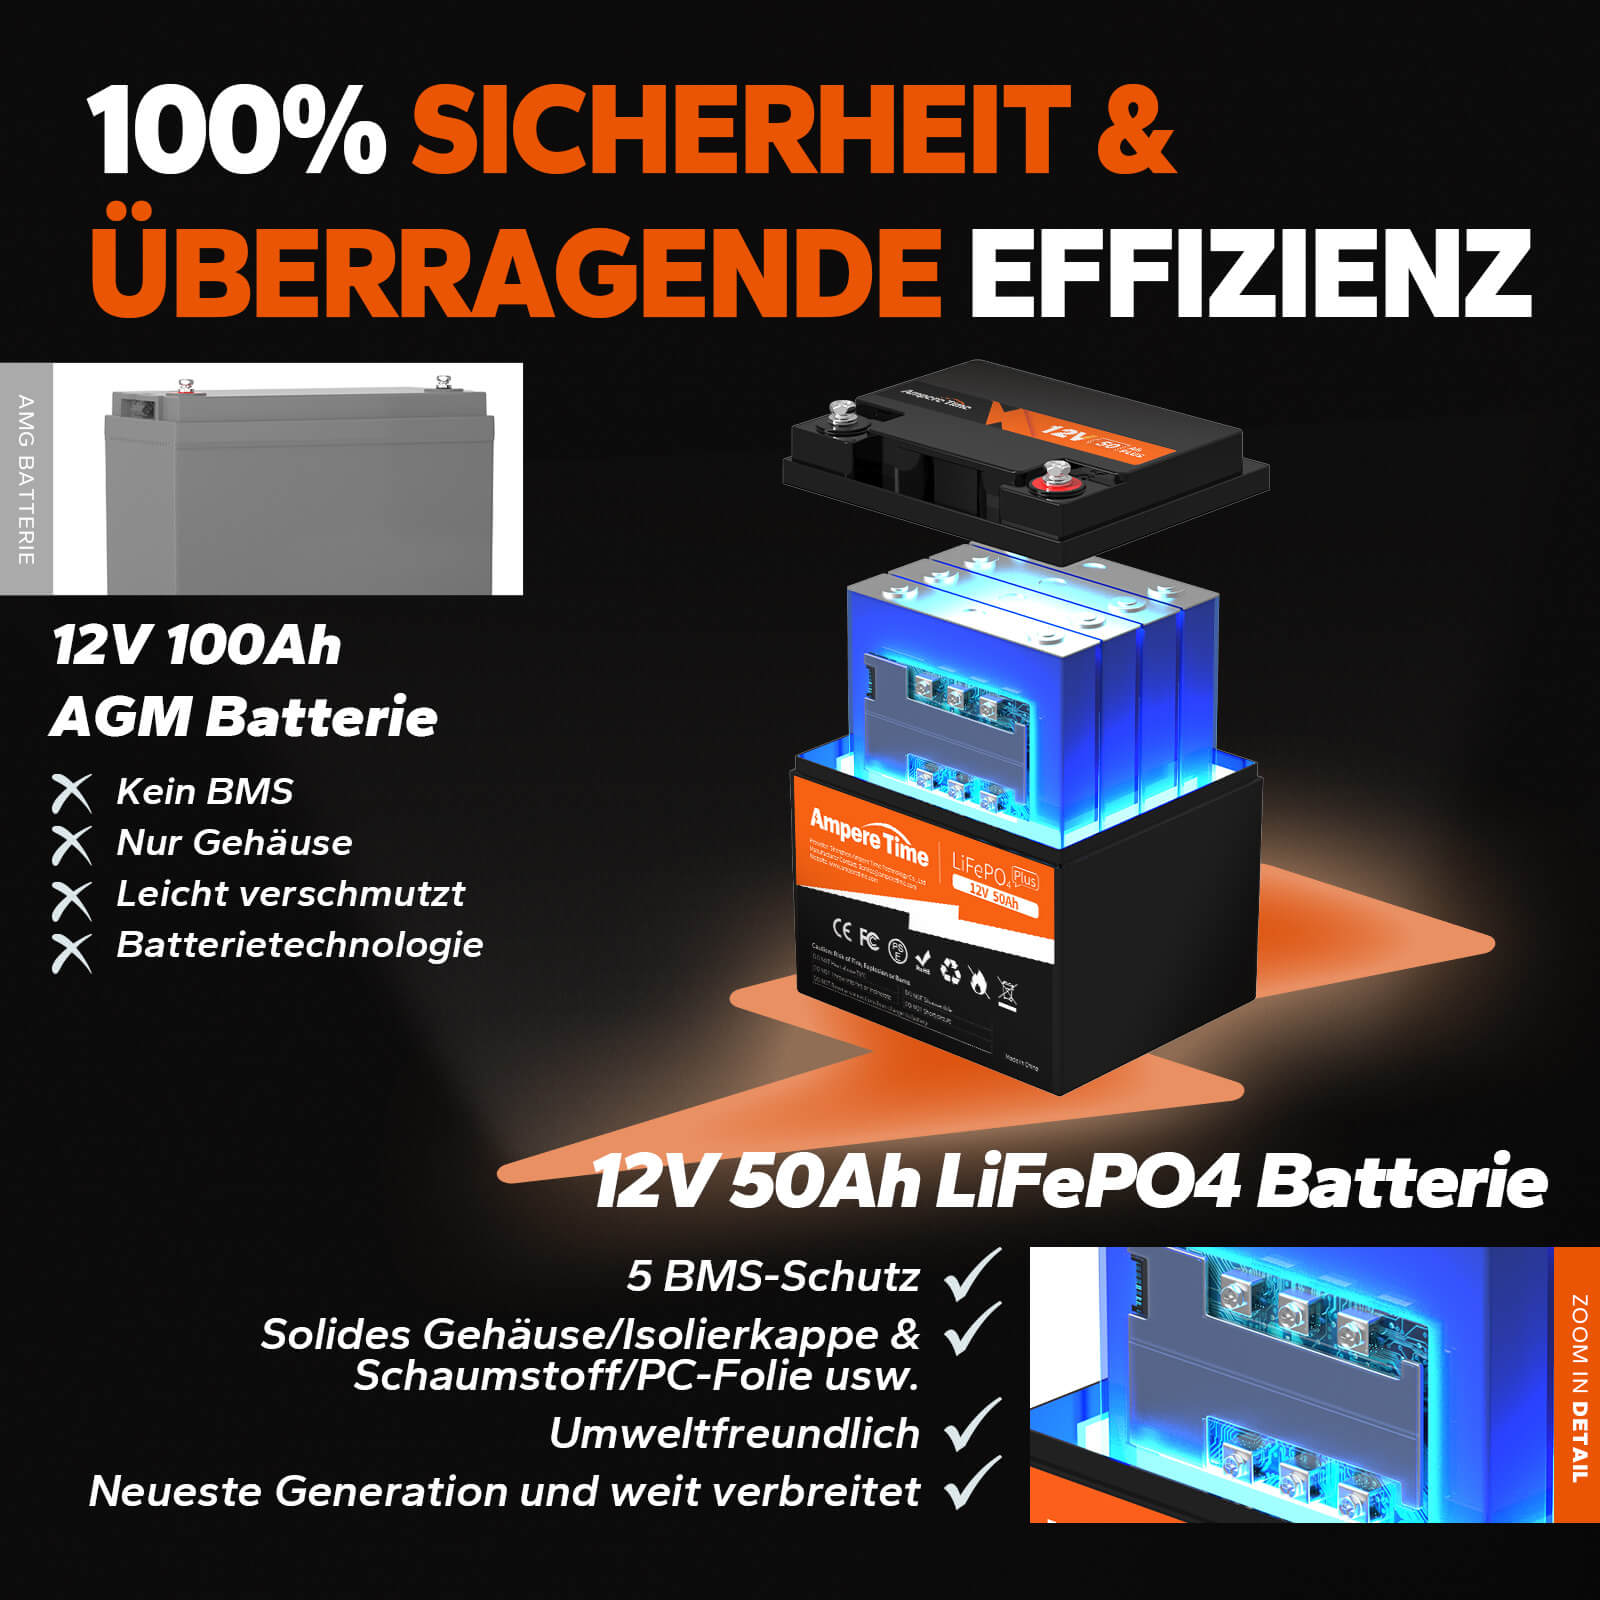 【0% Mehrwertsteuer】Ampere Time 50Ah LiFePO4 12V Batterie amperetime-de-free